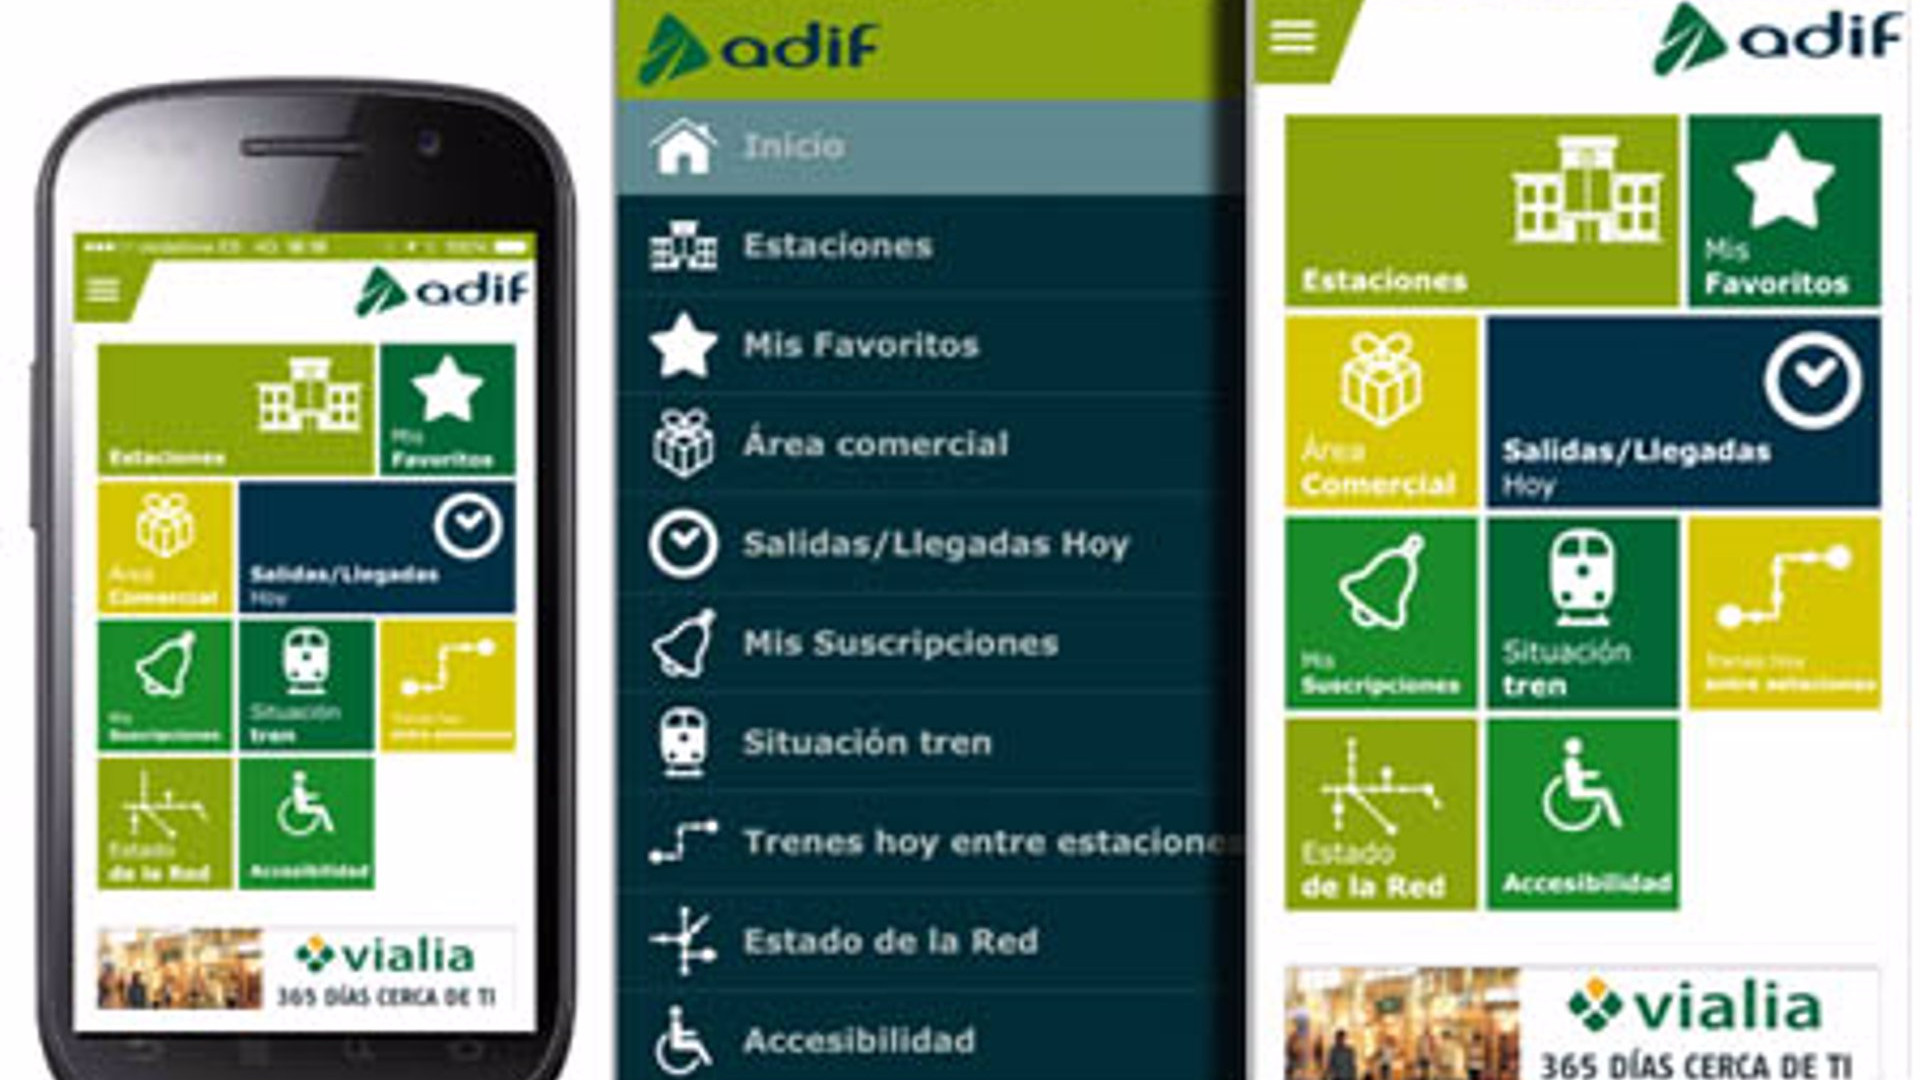 Adif lanzará a partir de julio una aplicación para recuperar objetos perdidos en trenes y estaciones